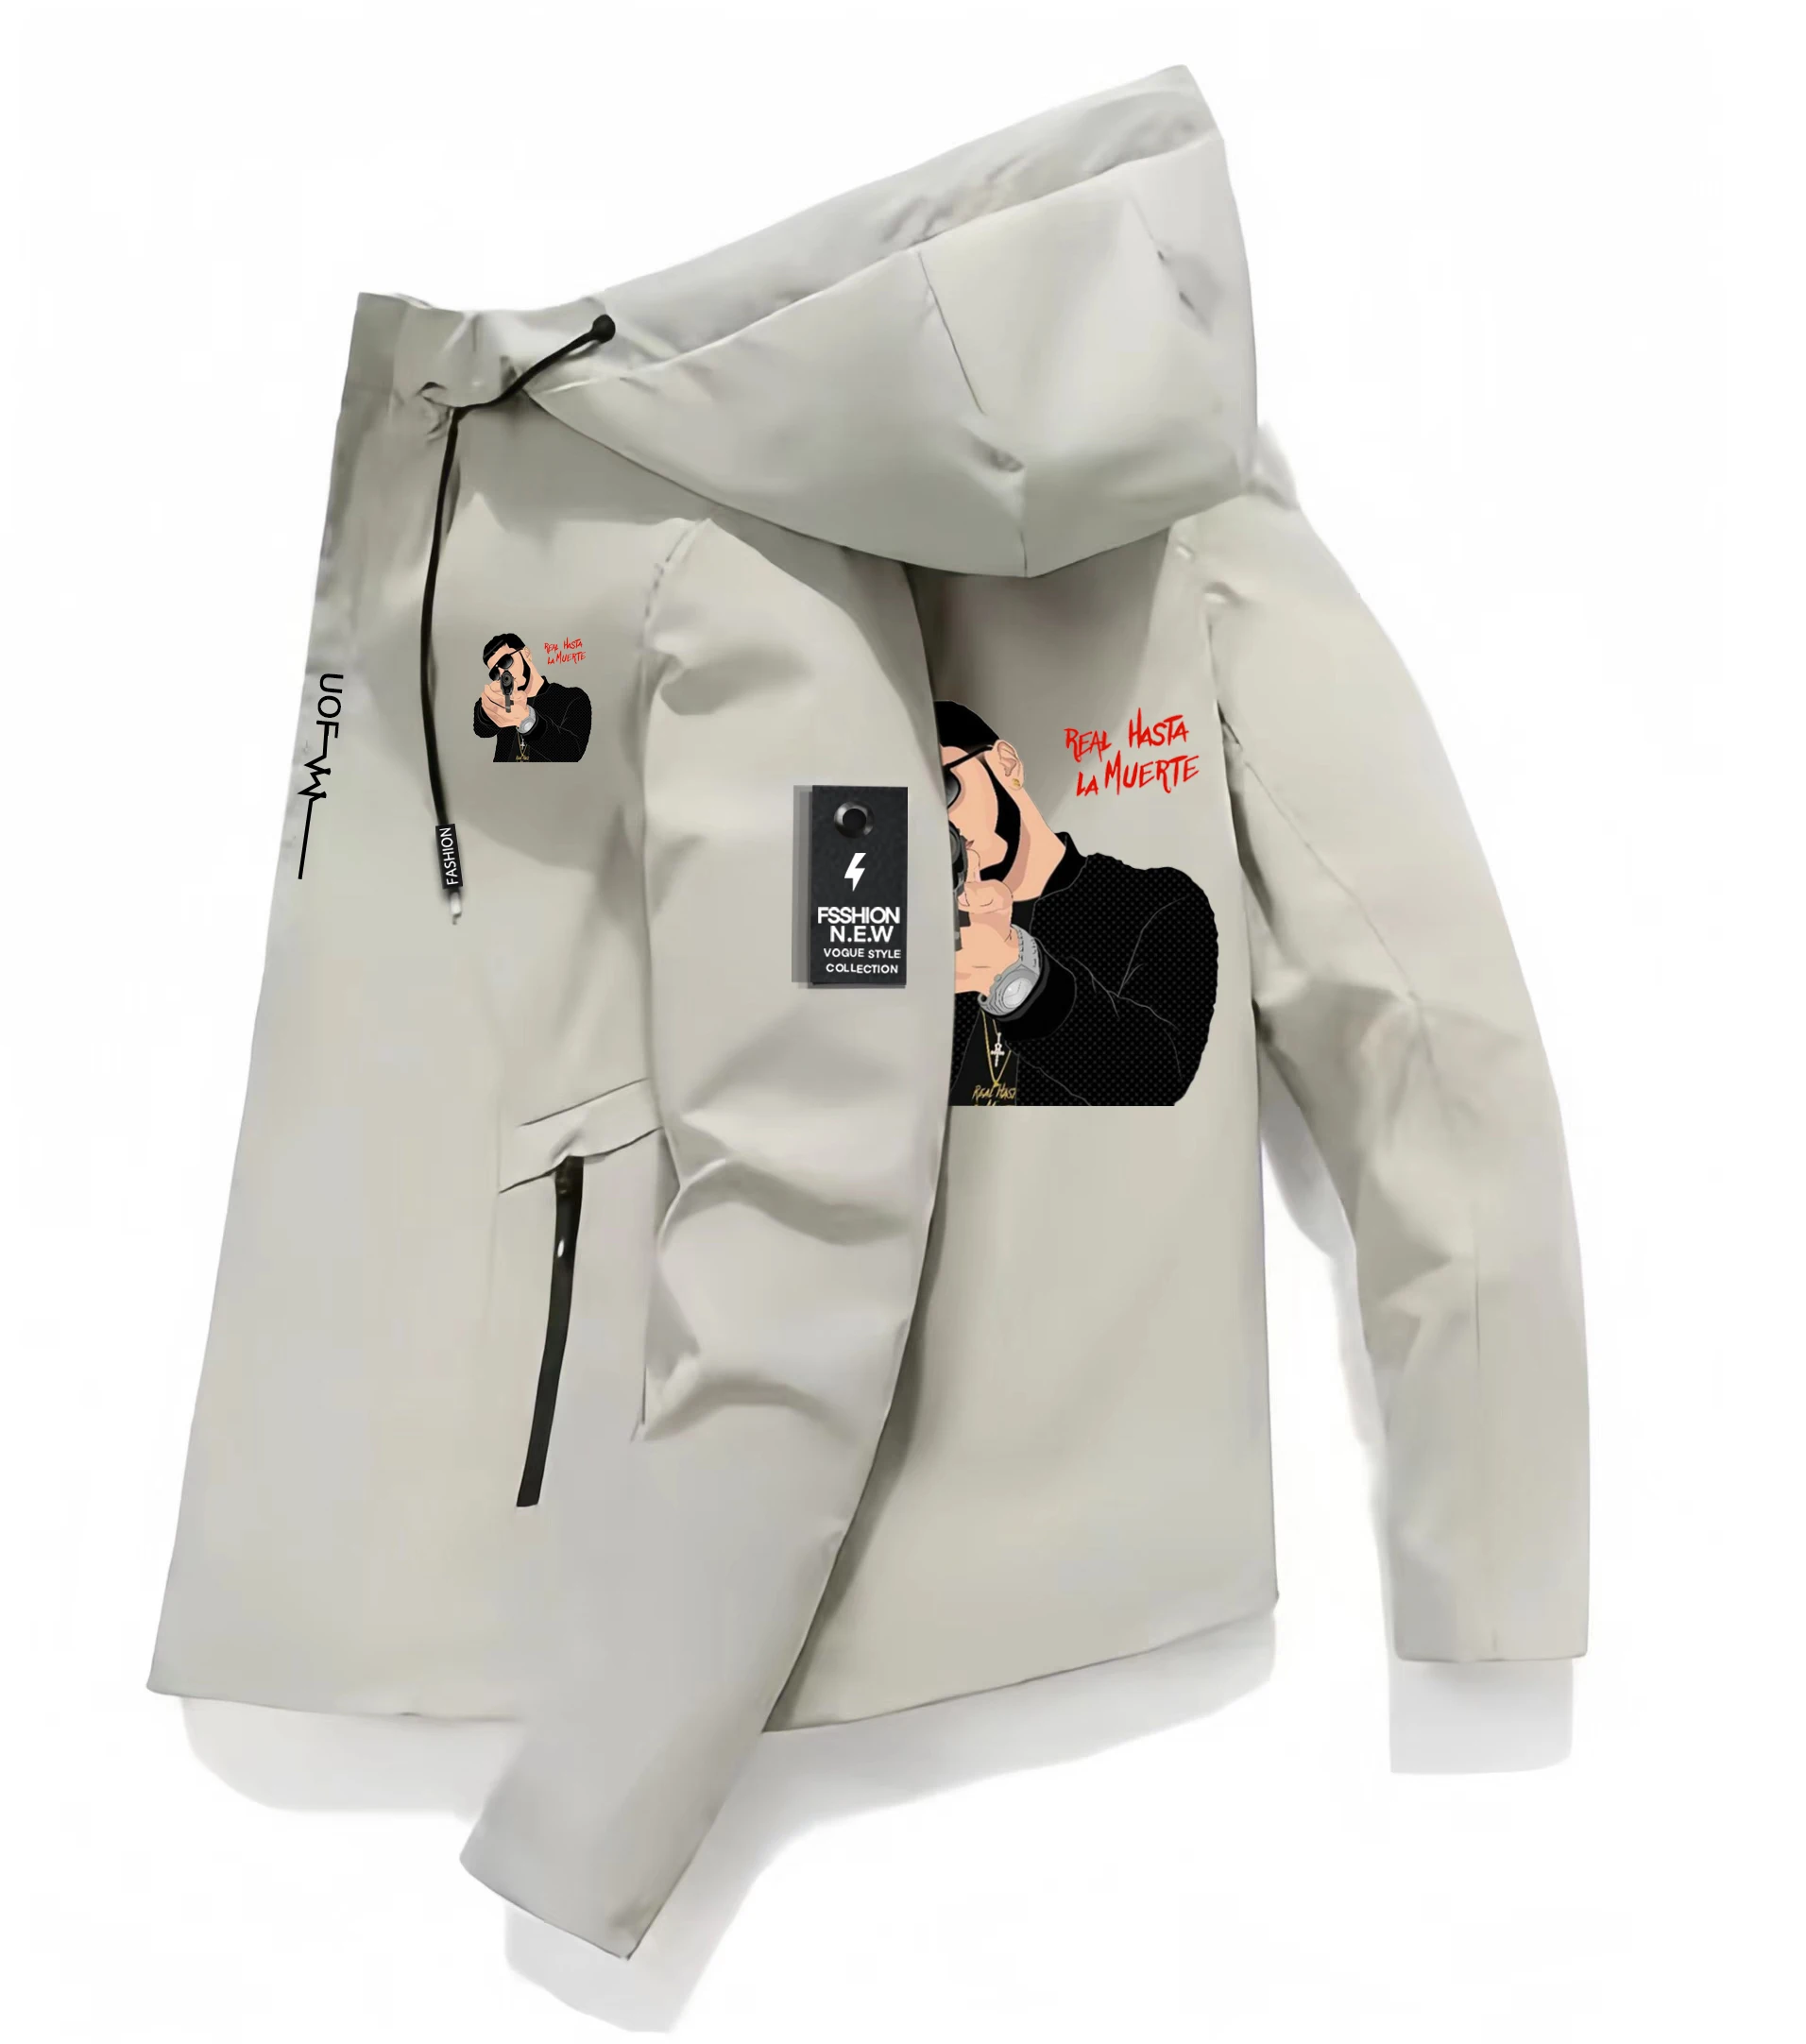 

Anuel AA Real Hasta La Muerte Printing Pattern Oversized Hoodie Jacket Men Fashion Top Hooded Jacket Loose sleeve Coat